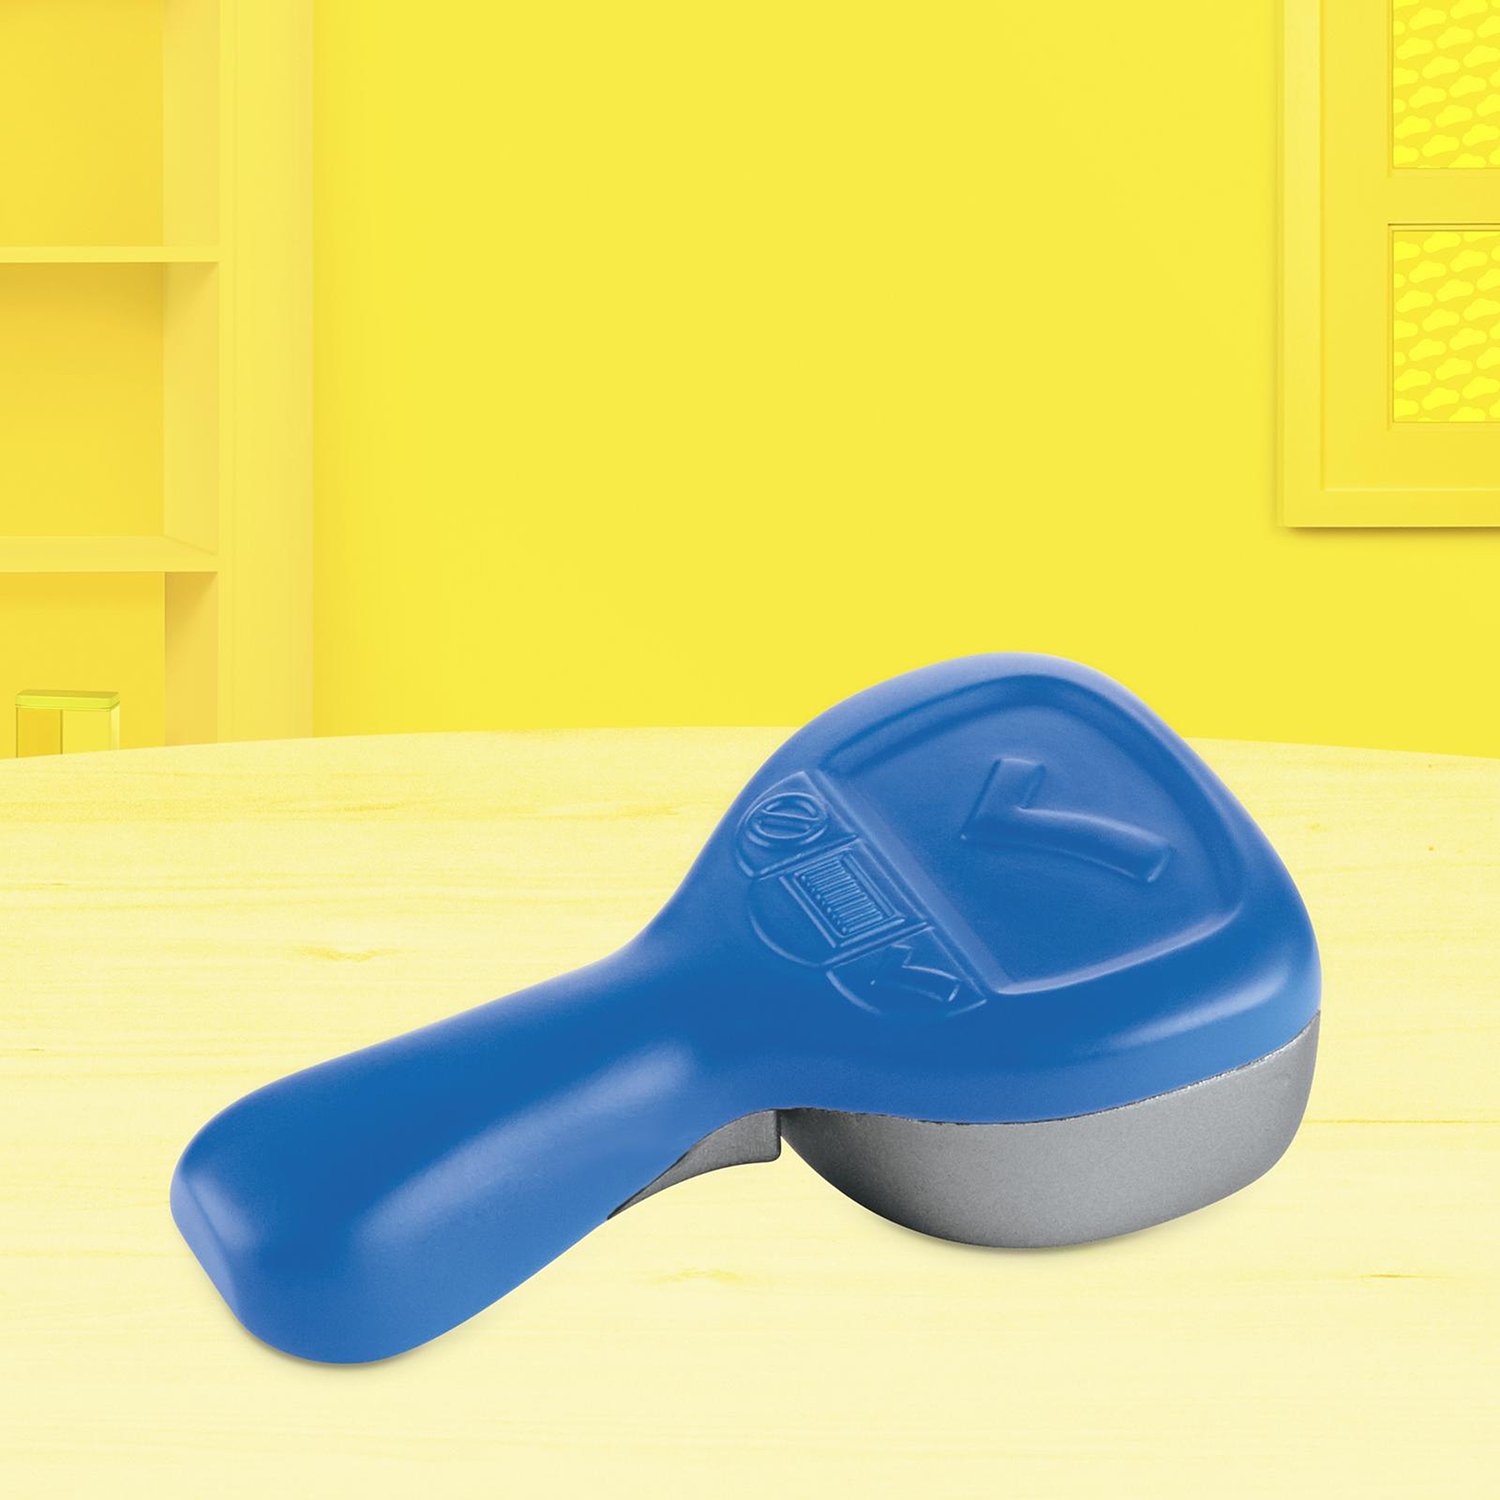 Набор для лепки Play-Doh Касса E68905L0